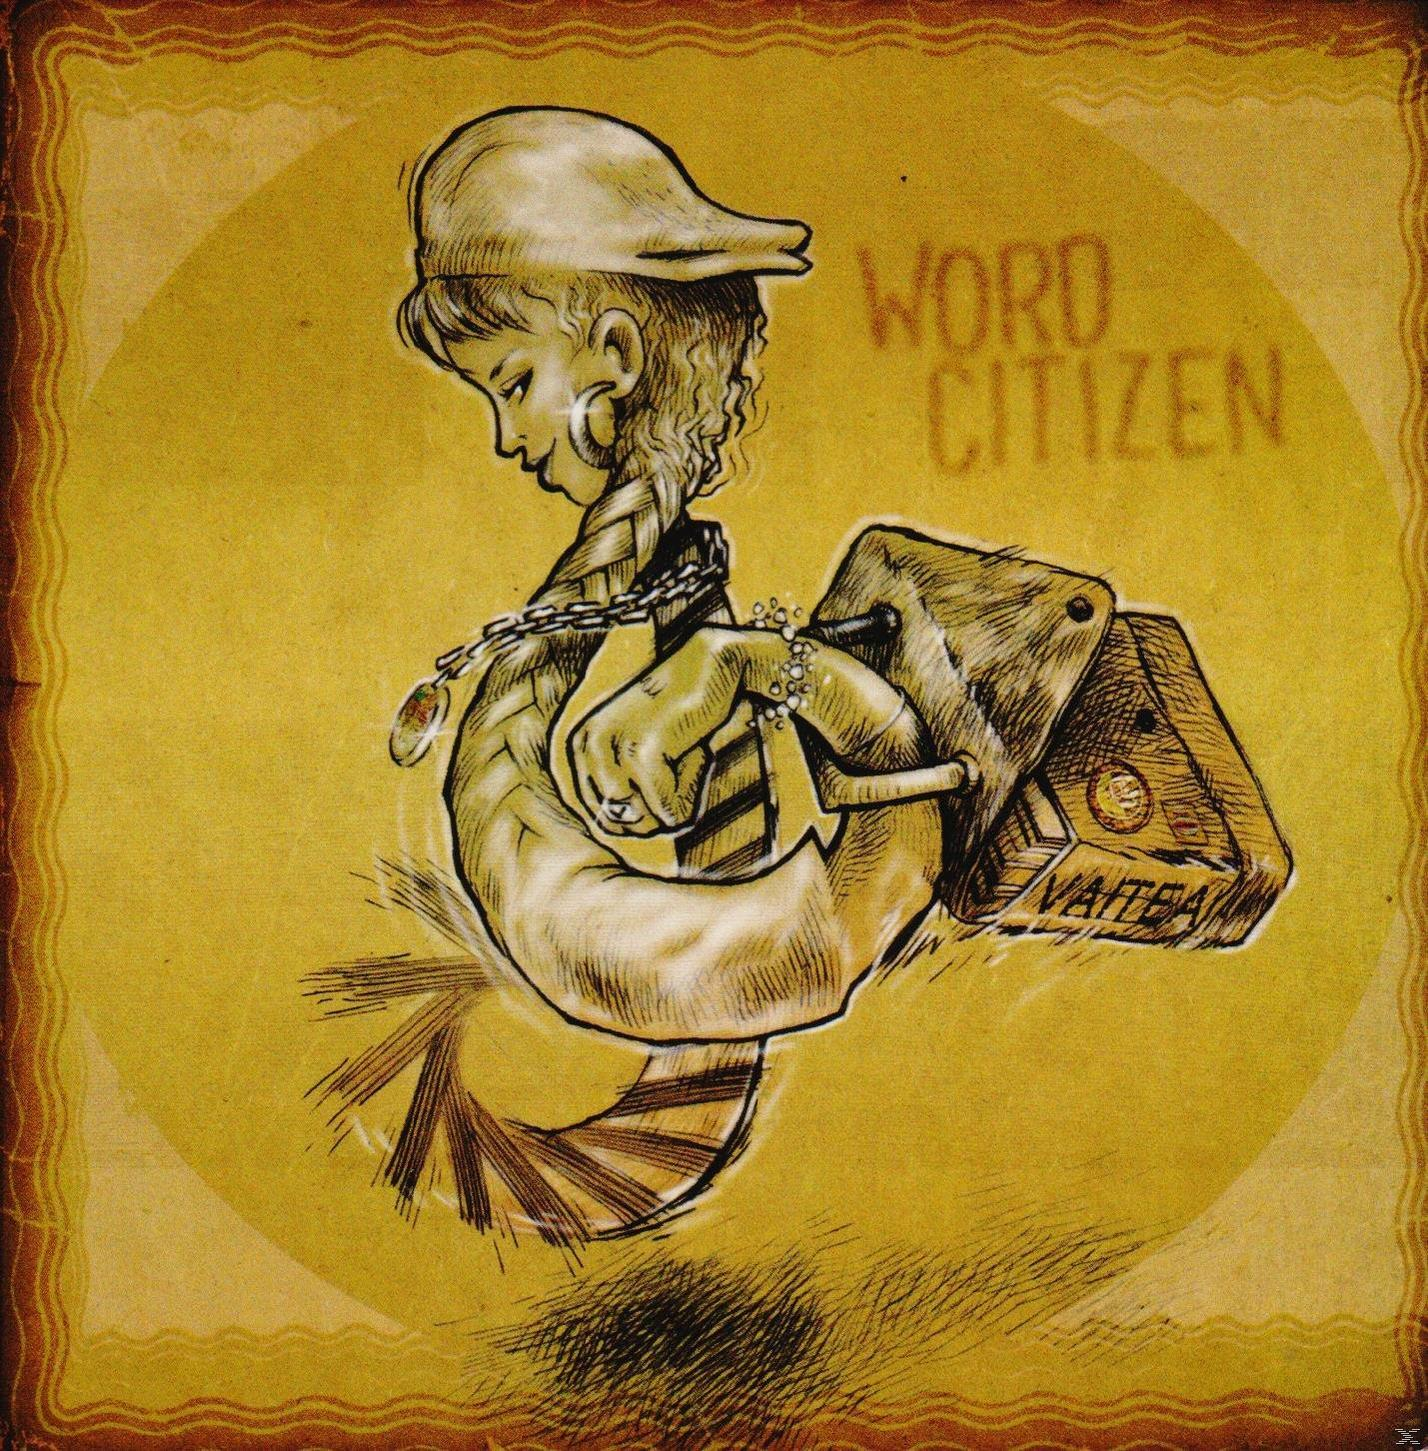 Vaitea - Word - (Vinyl) Citizen